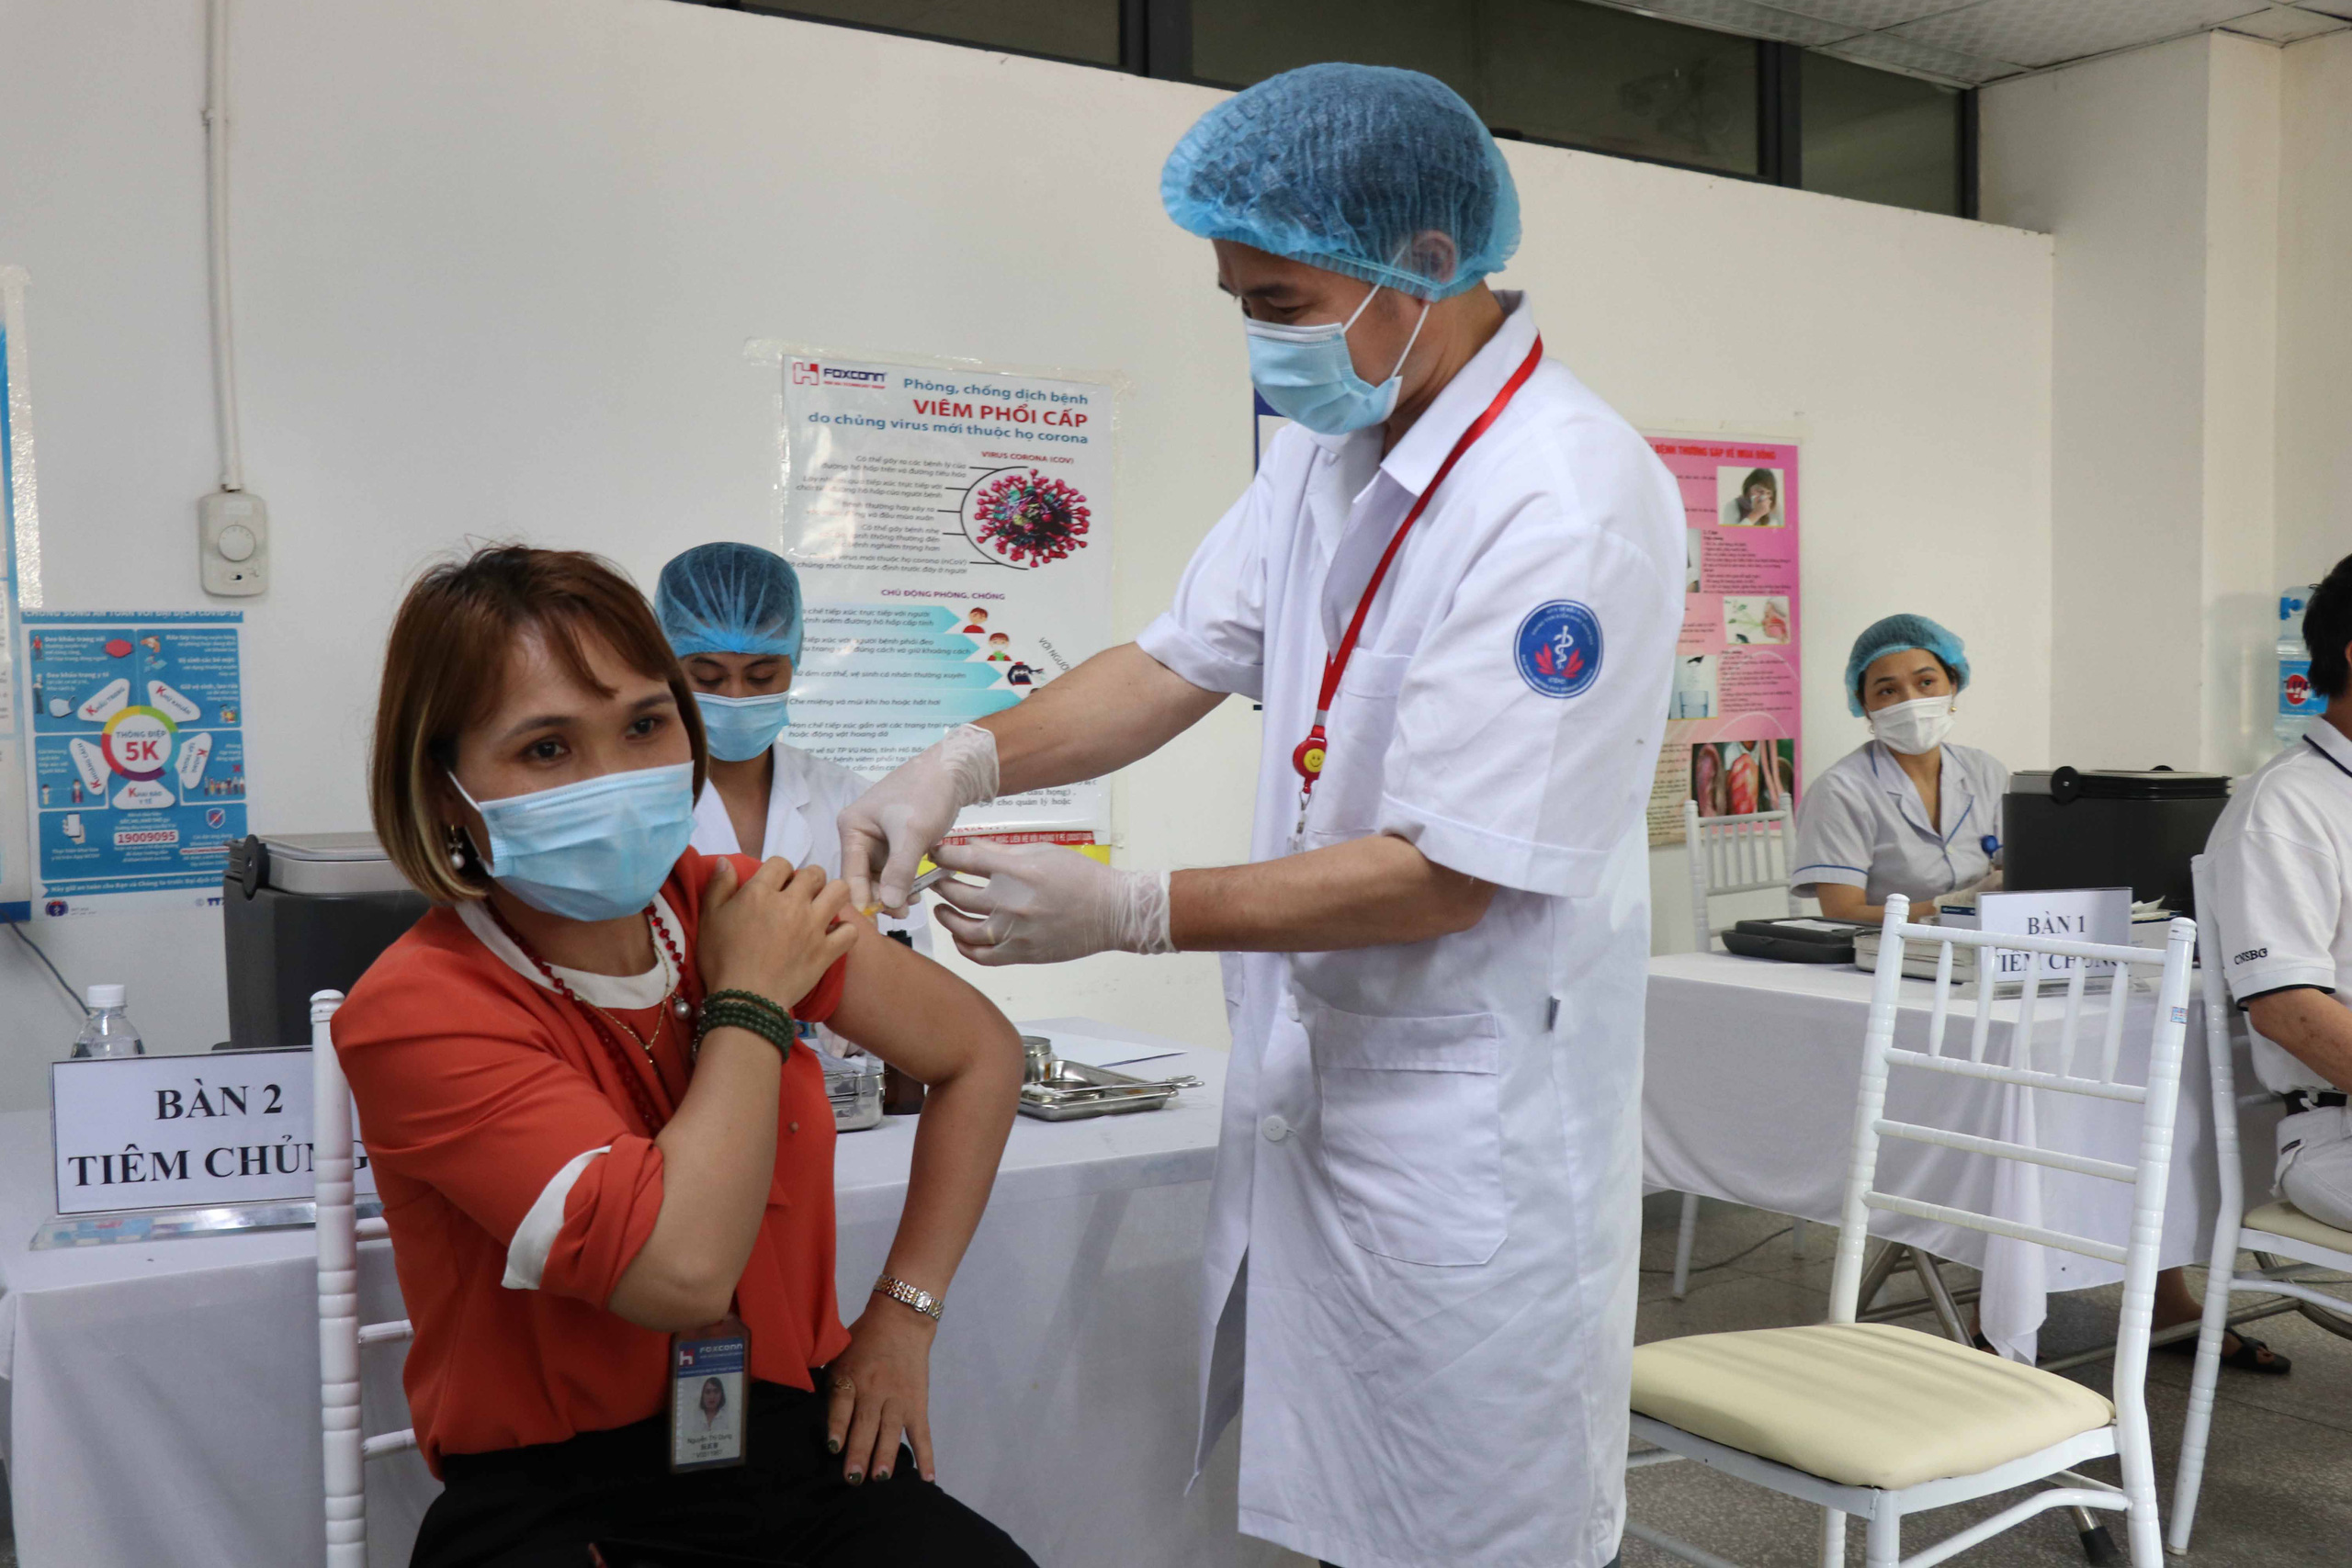 Động thái của DN sau lời kêu gọi “cùng đóng góp để nhanh có vaccine” của Thủ tướng Phạm Minh Chính - Ảnh 4.